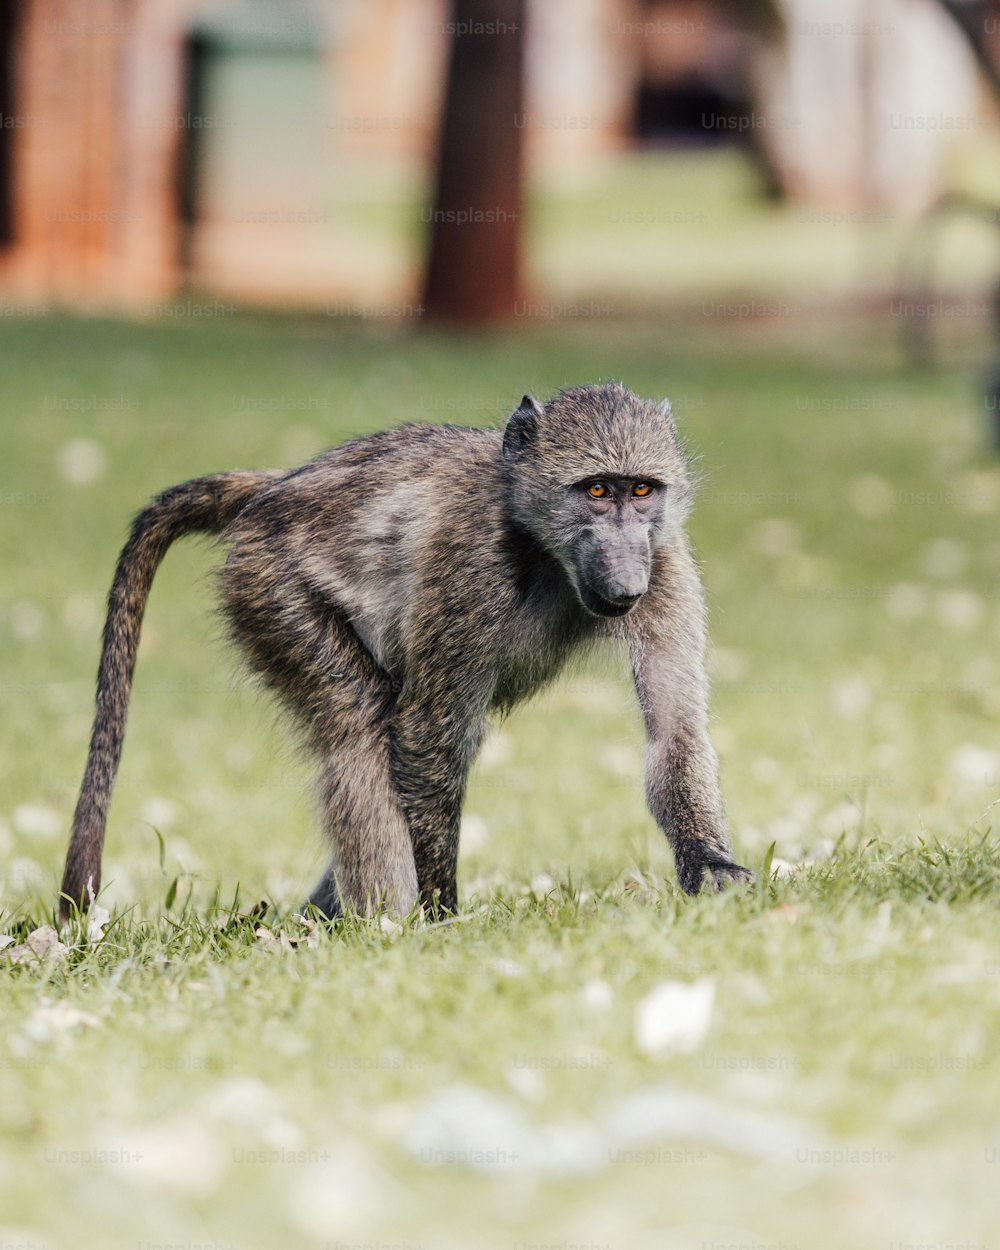 Ein kleiner Affe, der auf einem üppig grünen Feld steht